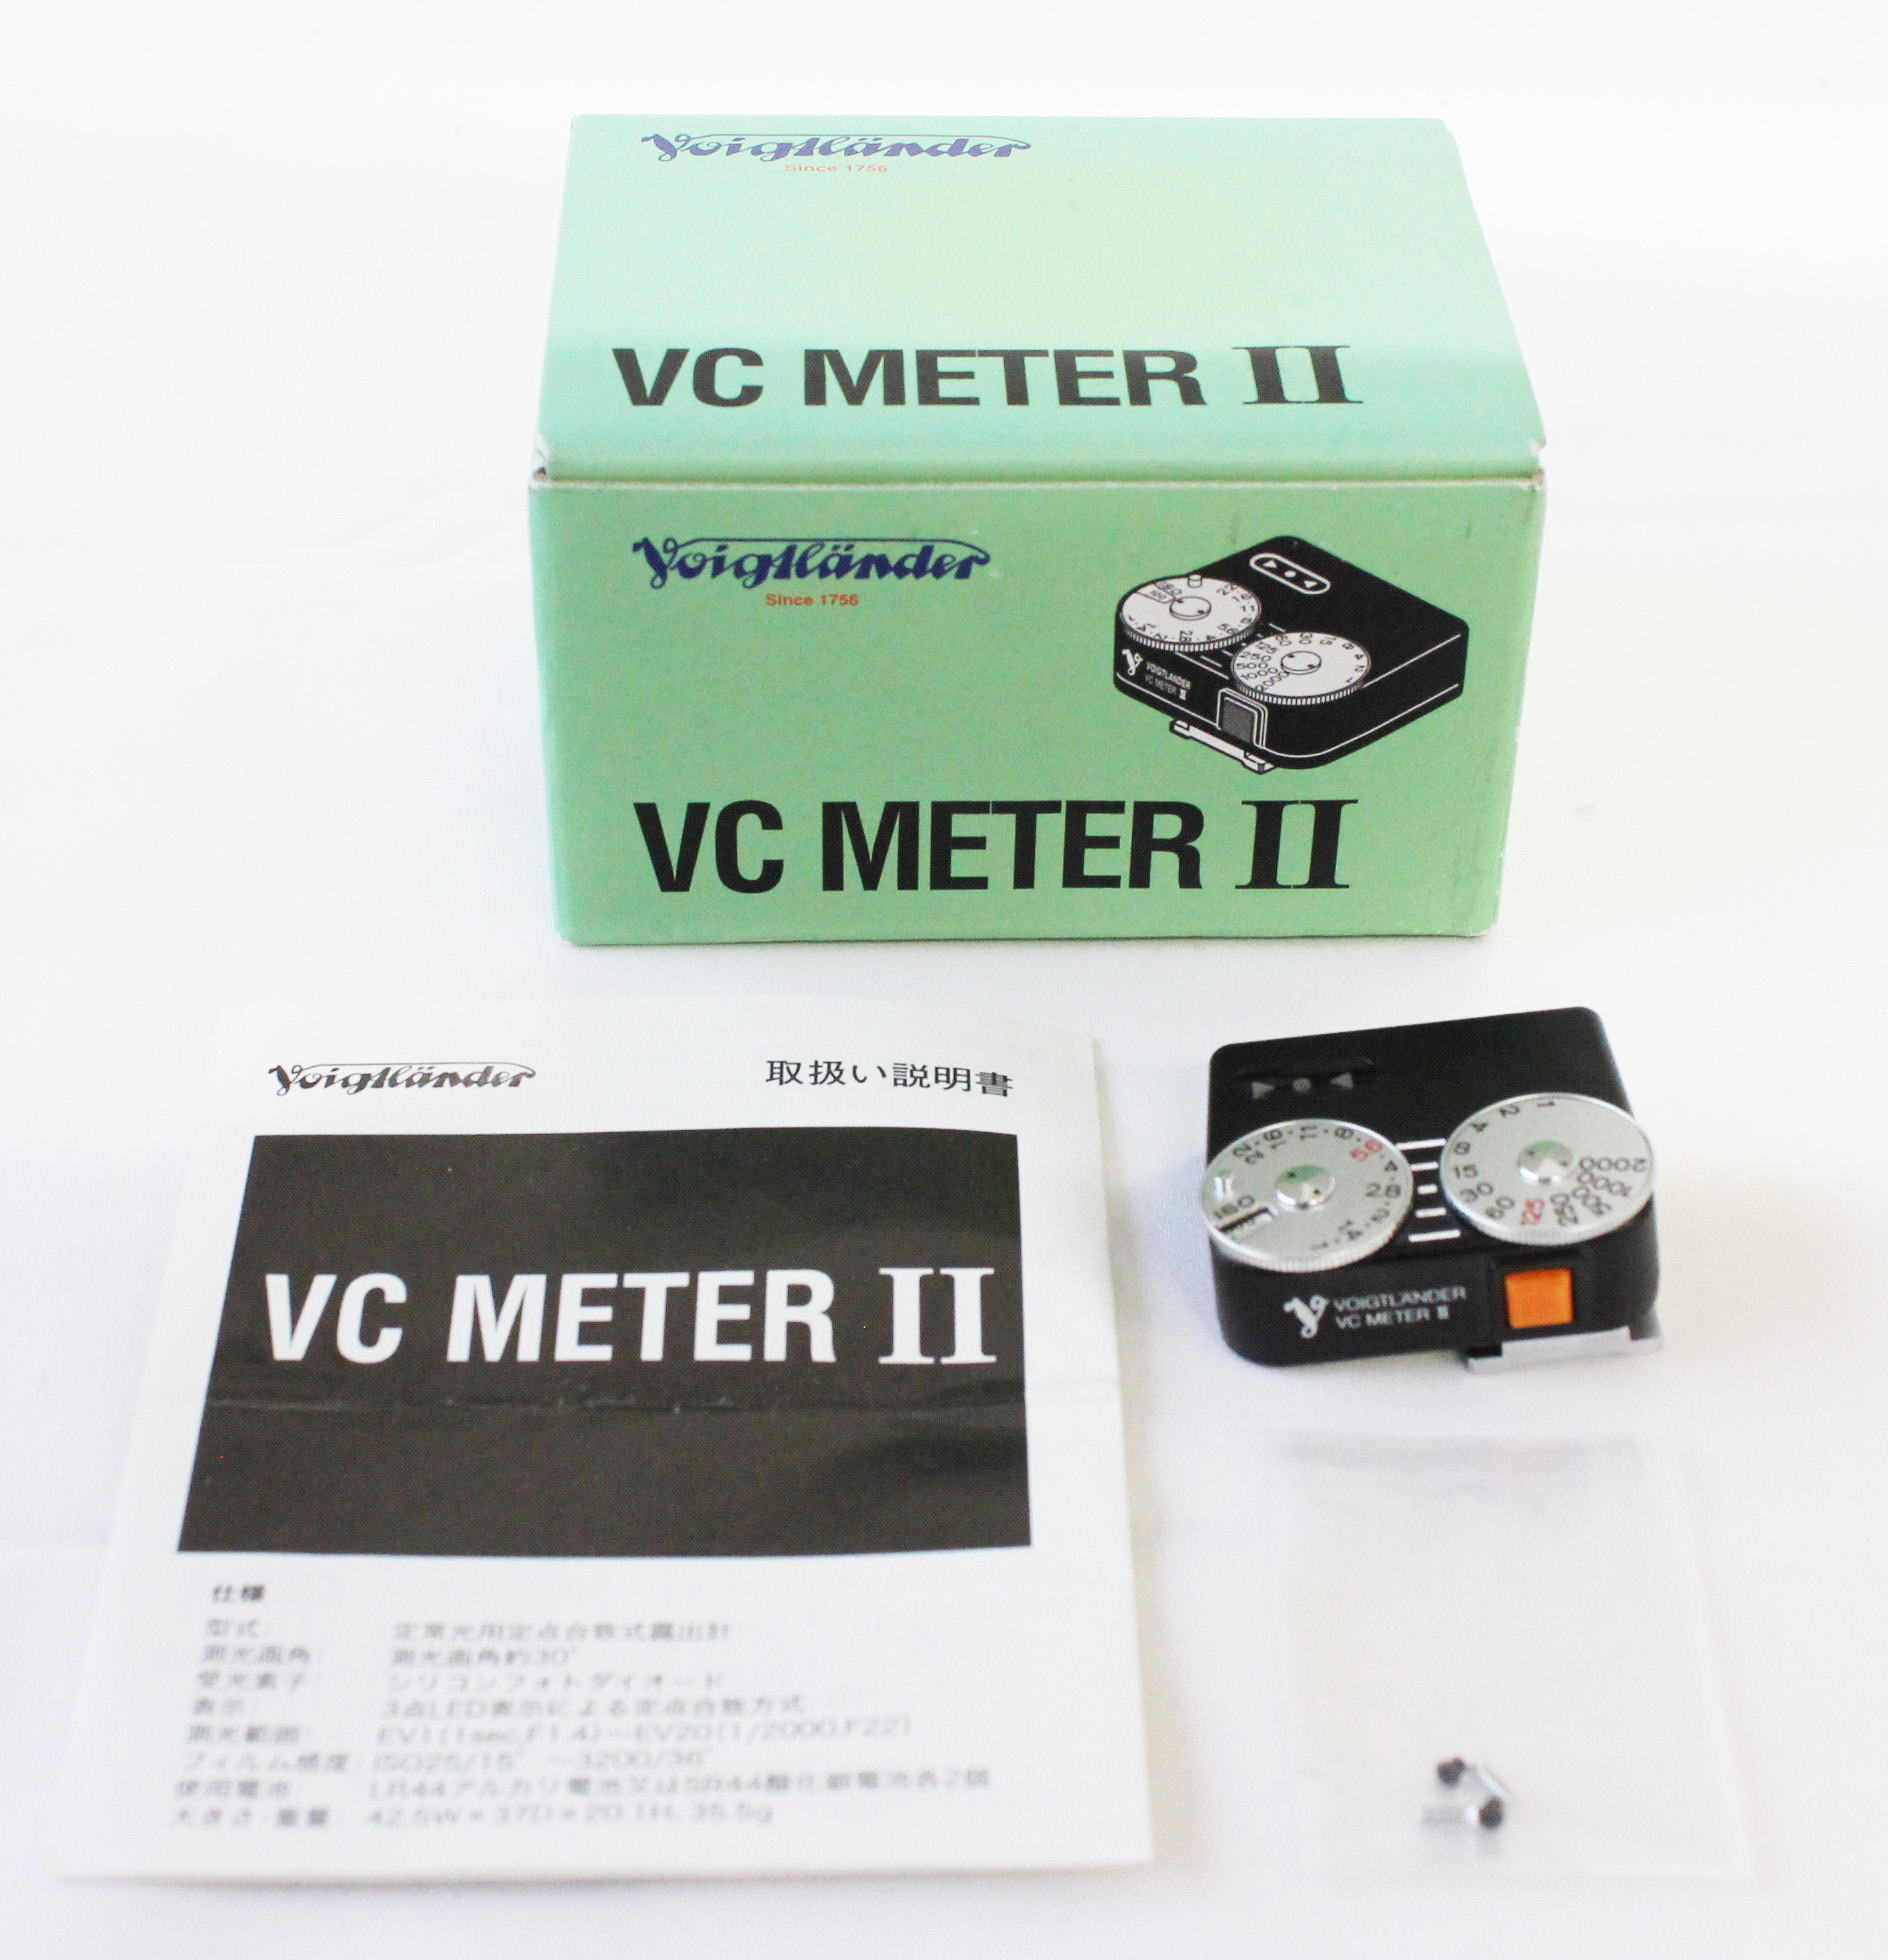 Japan Used Camera Shop | [Unused in Box] Voigtlander VC Meter II Light Meter Black from Japan